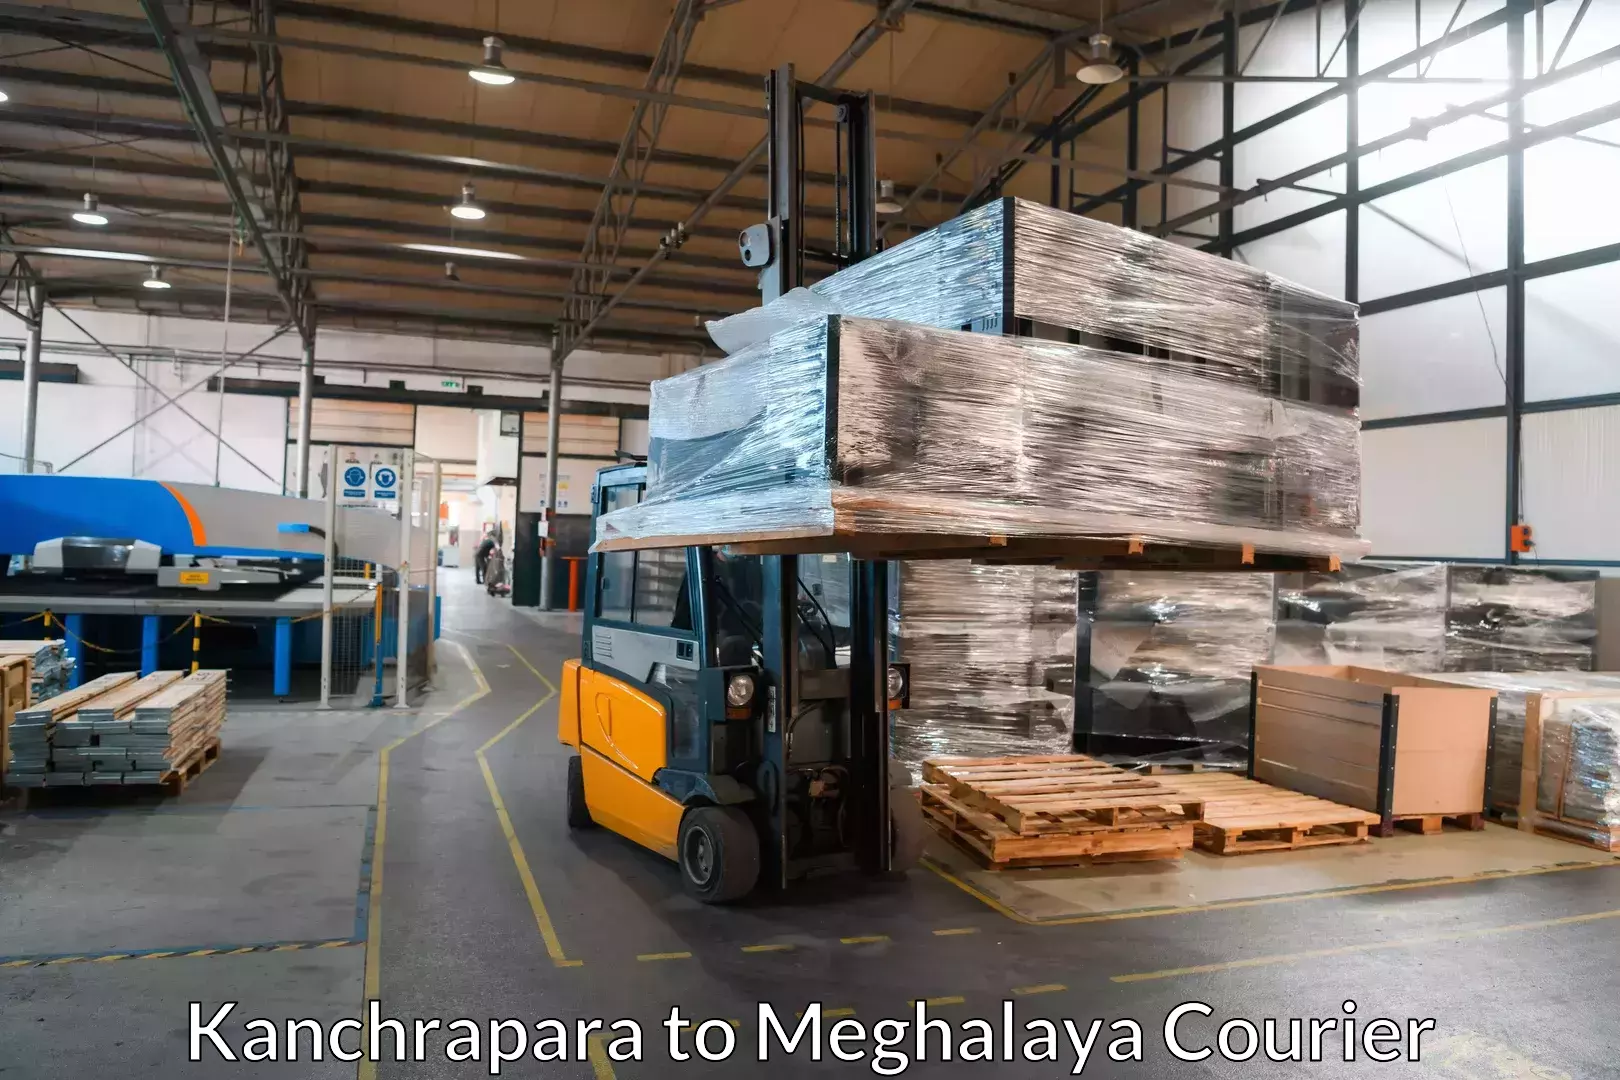 Quality moving and storage in Kanchrapara to Meghalaya